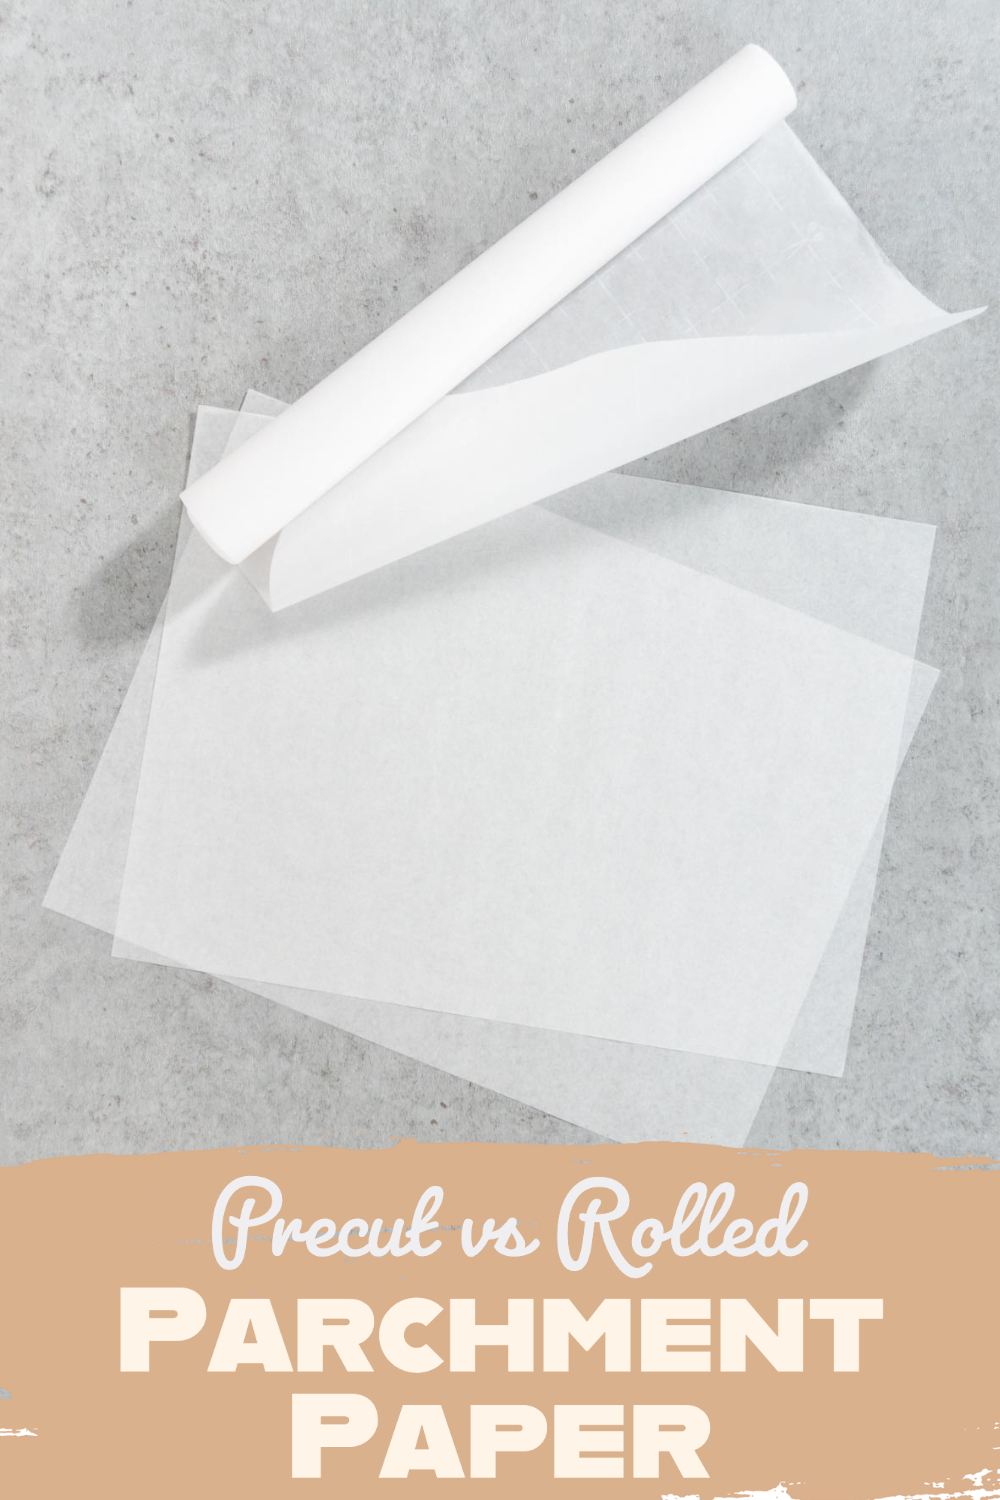 Pre-cut vs Rolled Parchment Paper